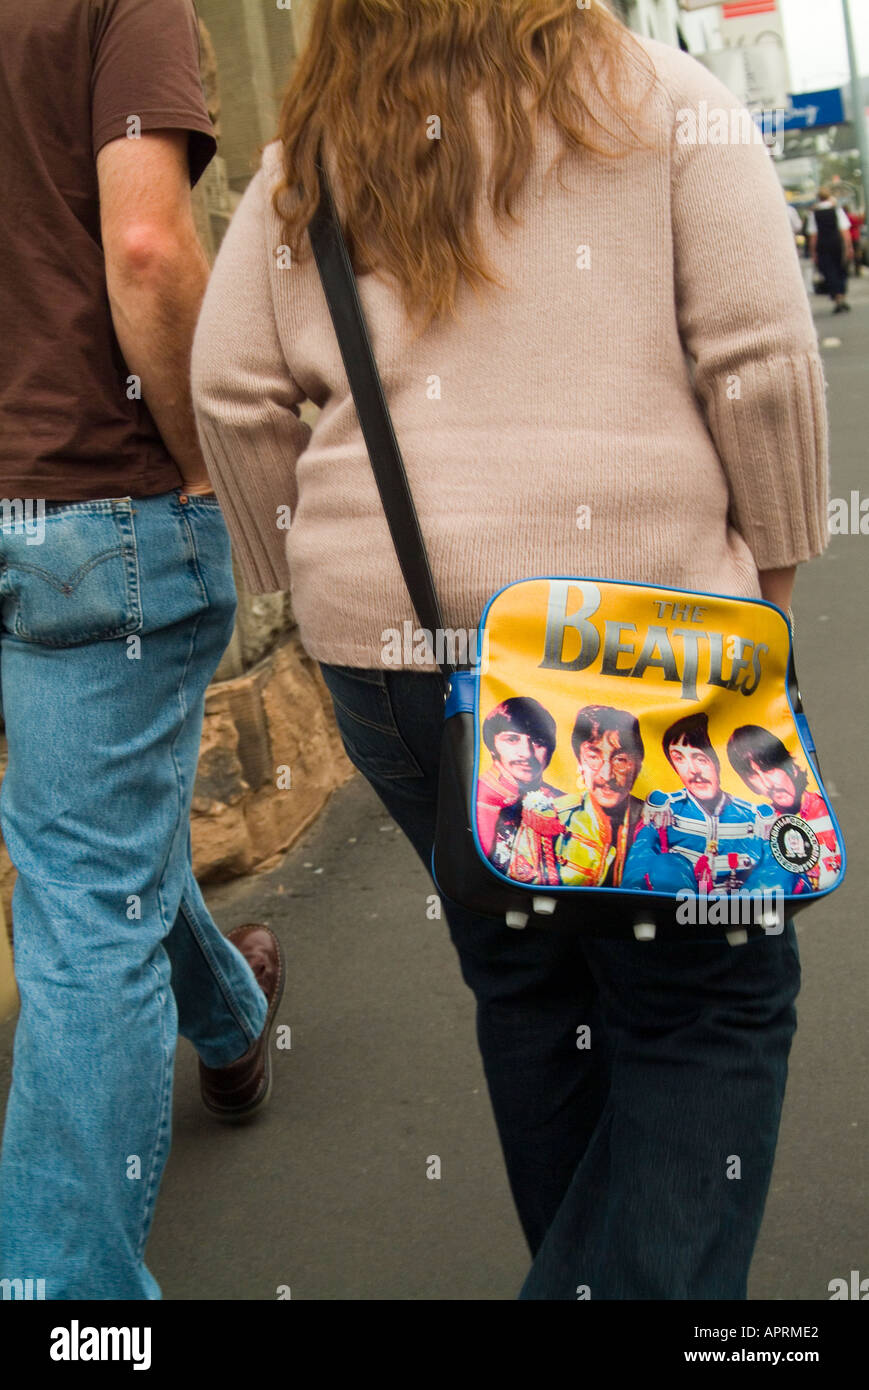 Beatles memorabilia sous la forme d'un sac à bandoulière Banque D'Images